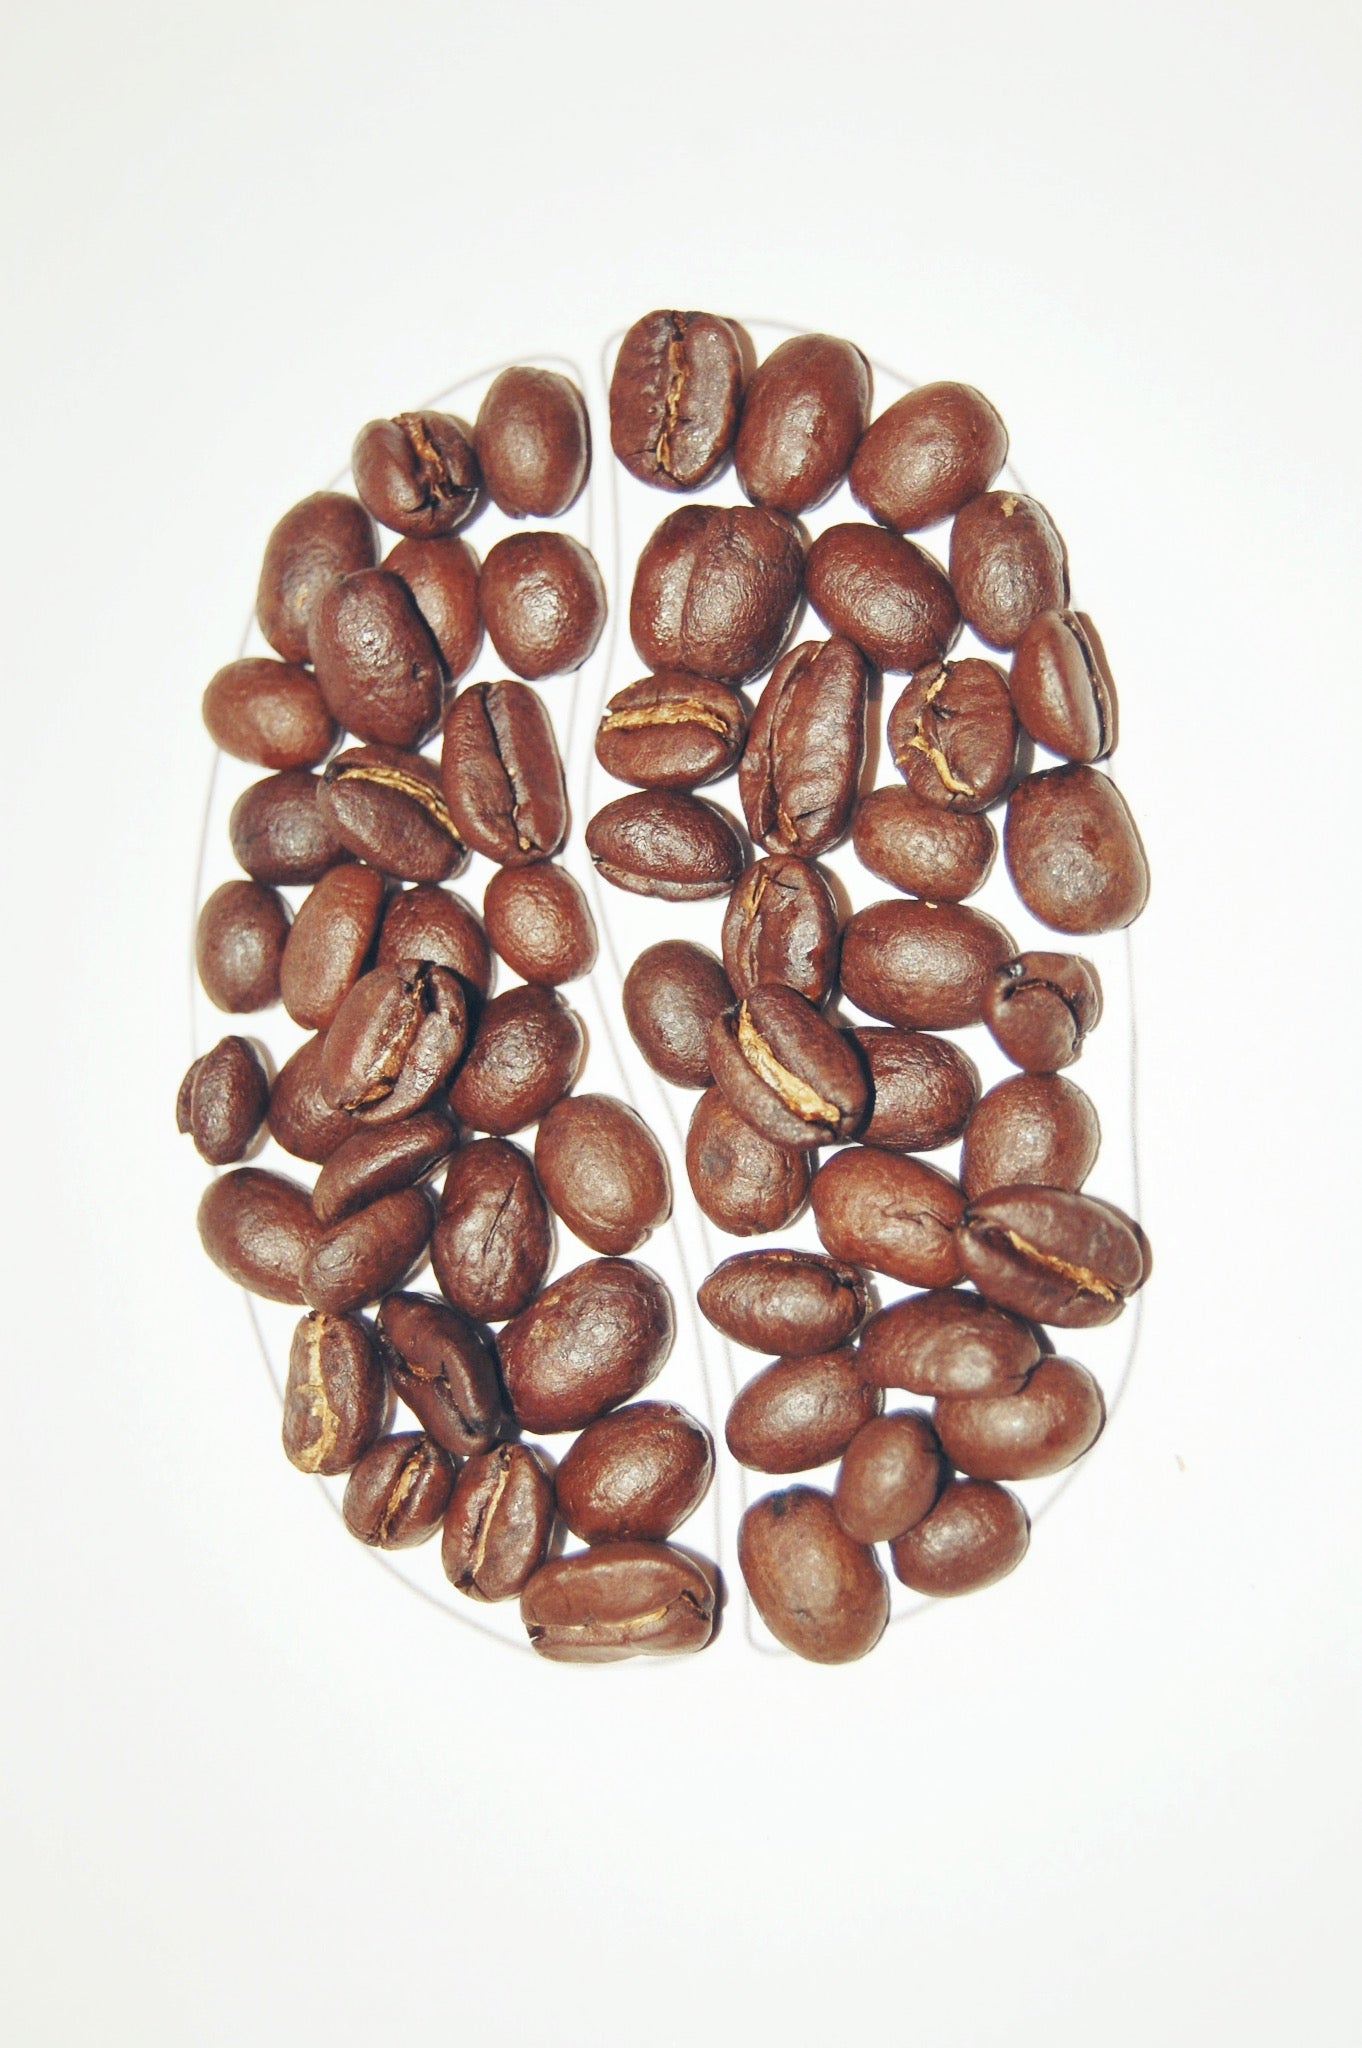 Vårt mål är att göra kaffeindustrin godare och helt hållbar